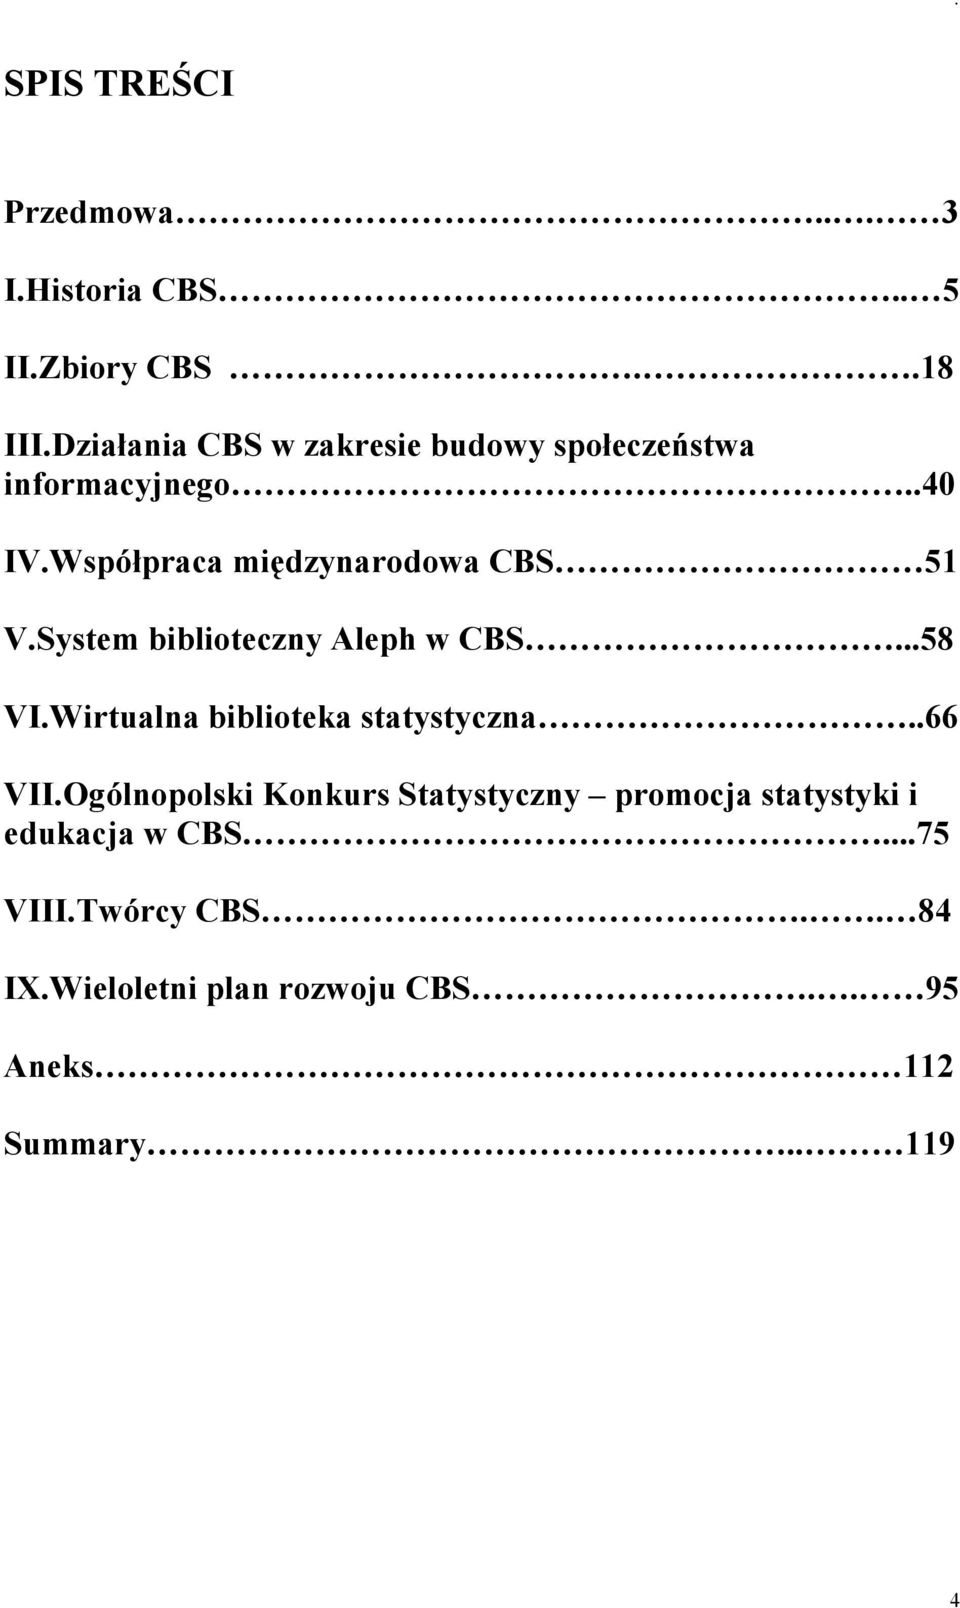 System biblioteczny Aleph w CBS...58 VI.Wirtualna biblioteka statystyczna..66 VII.